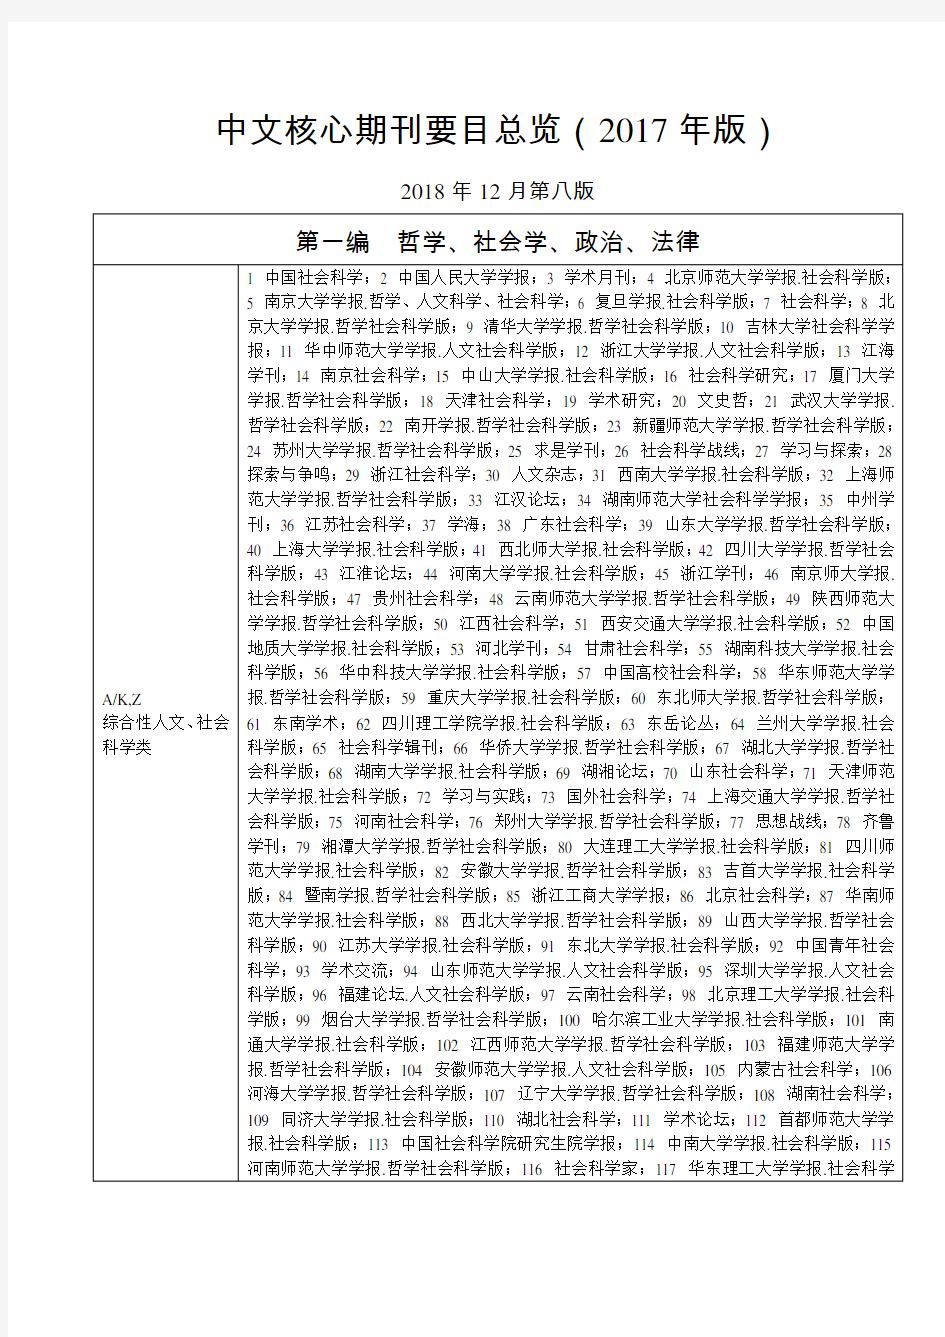 中文核心期刊要目总览(2017年版)